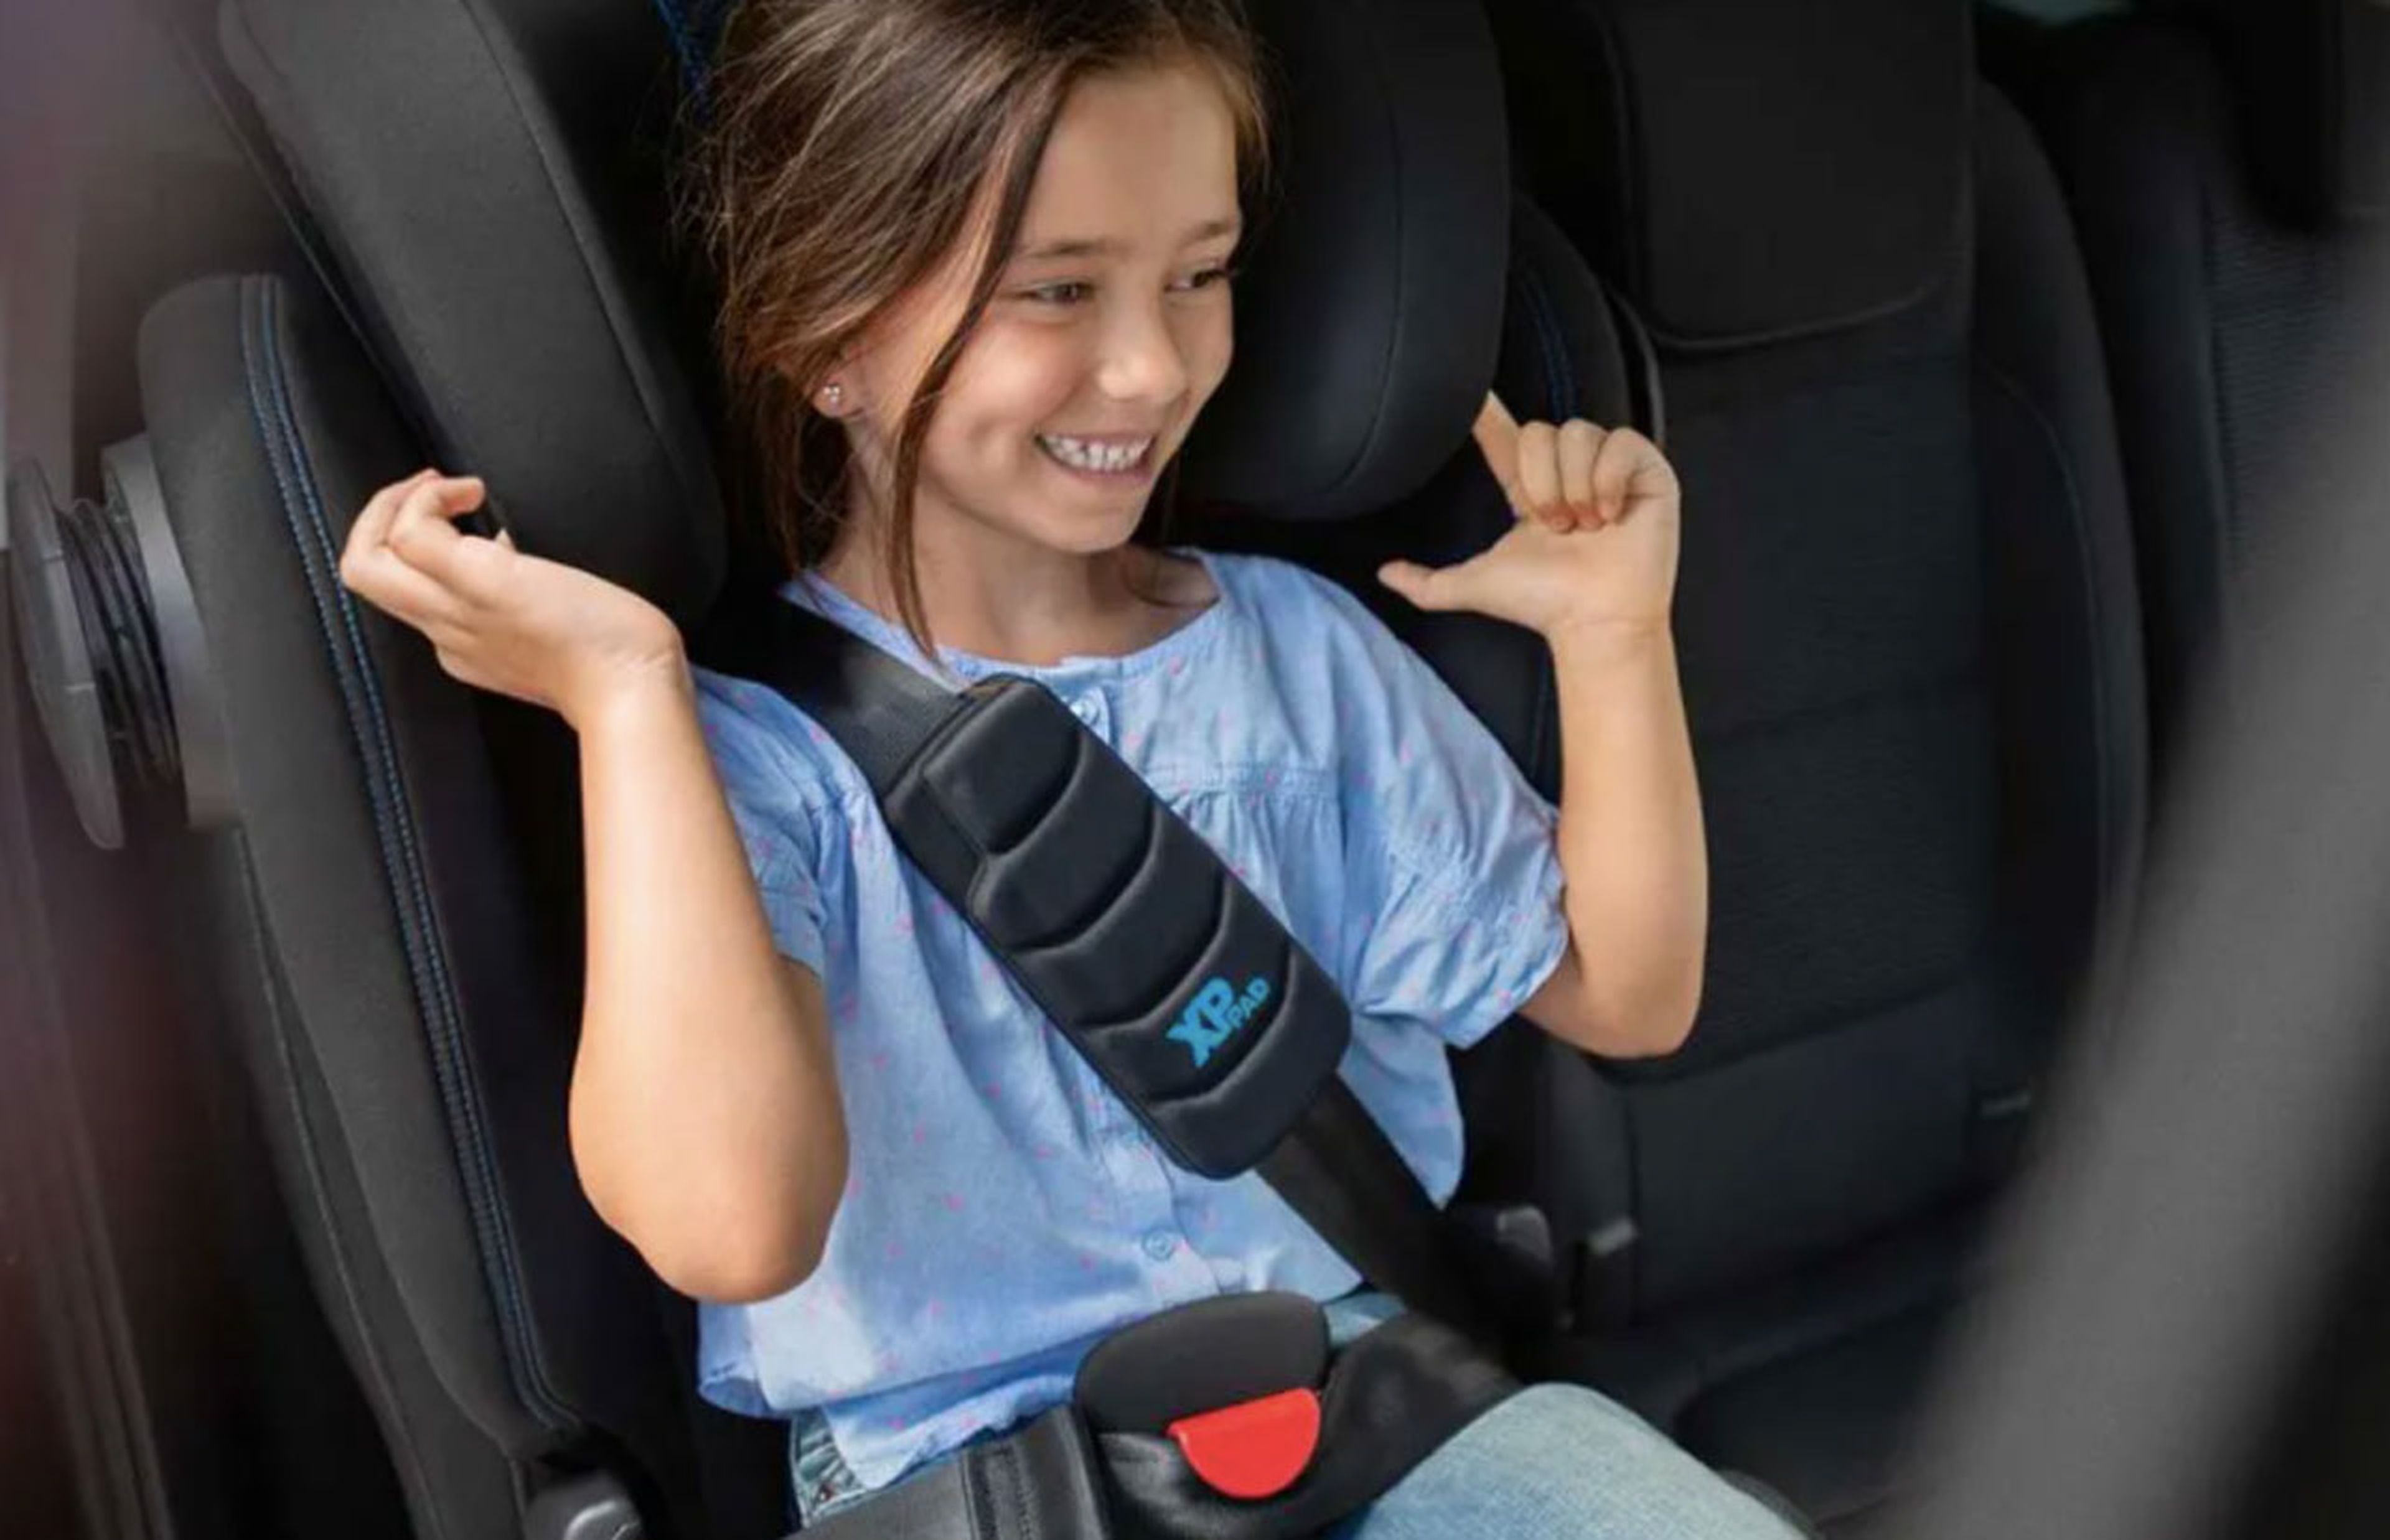 Qué tipos de cinturón seguridad para automóvil existen y cómo